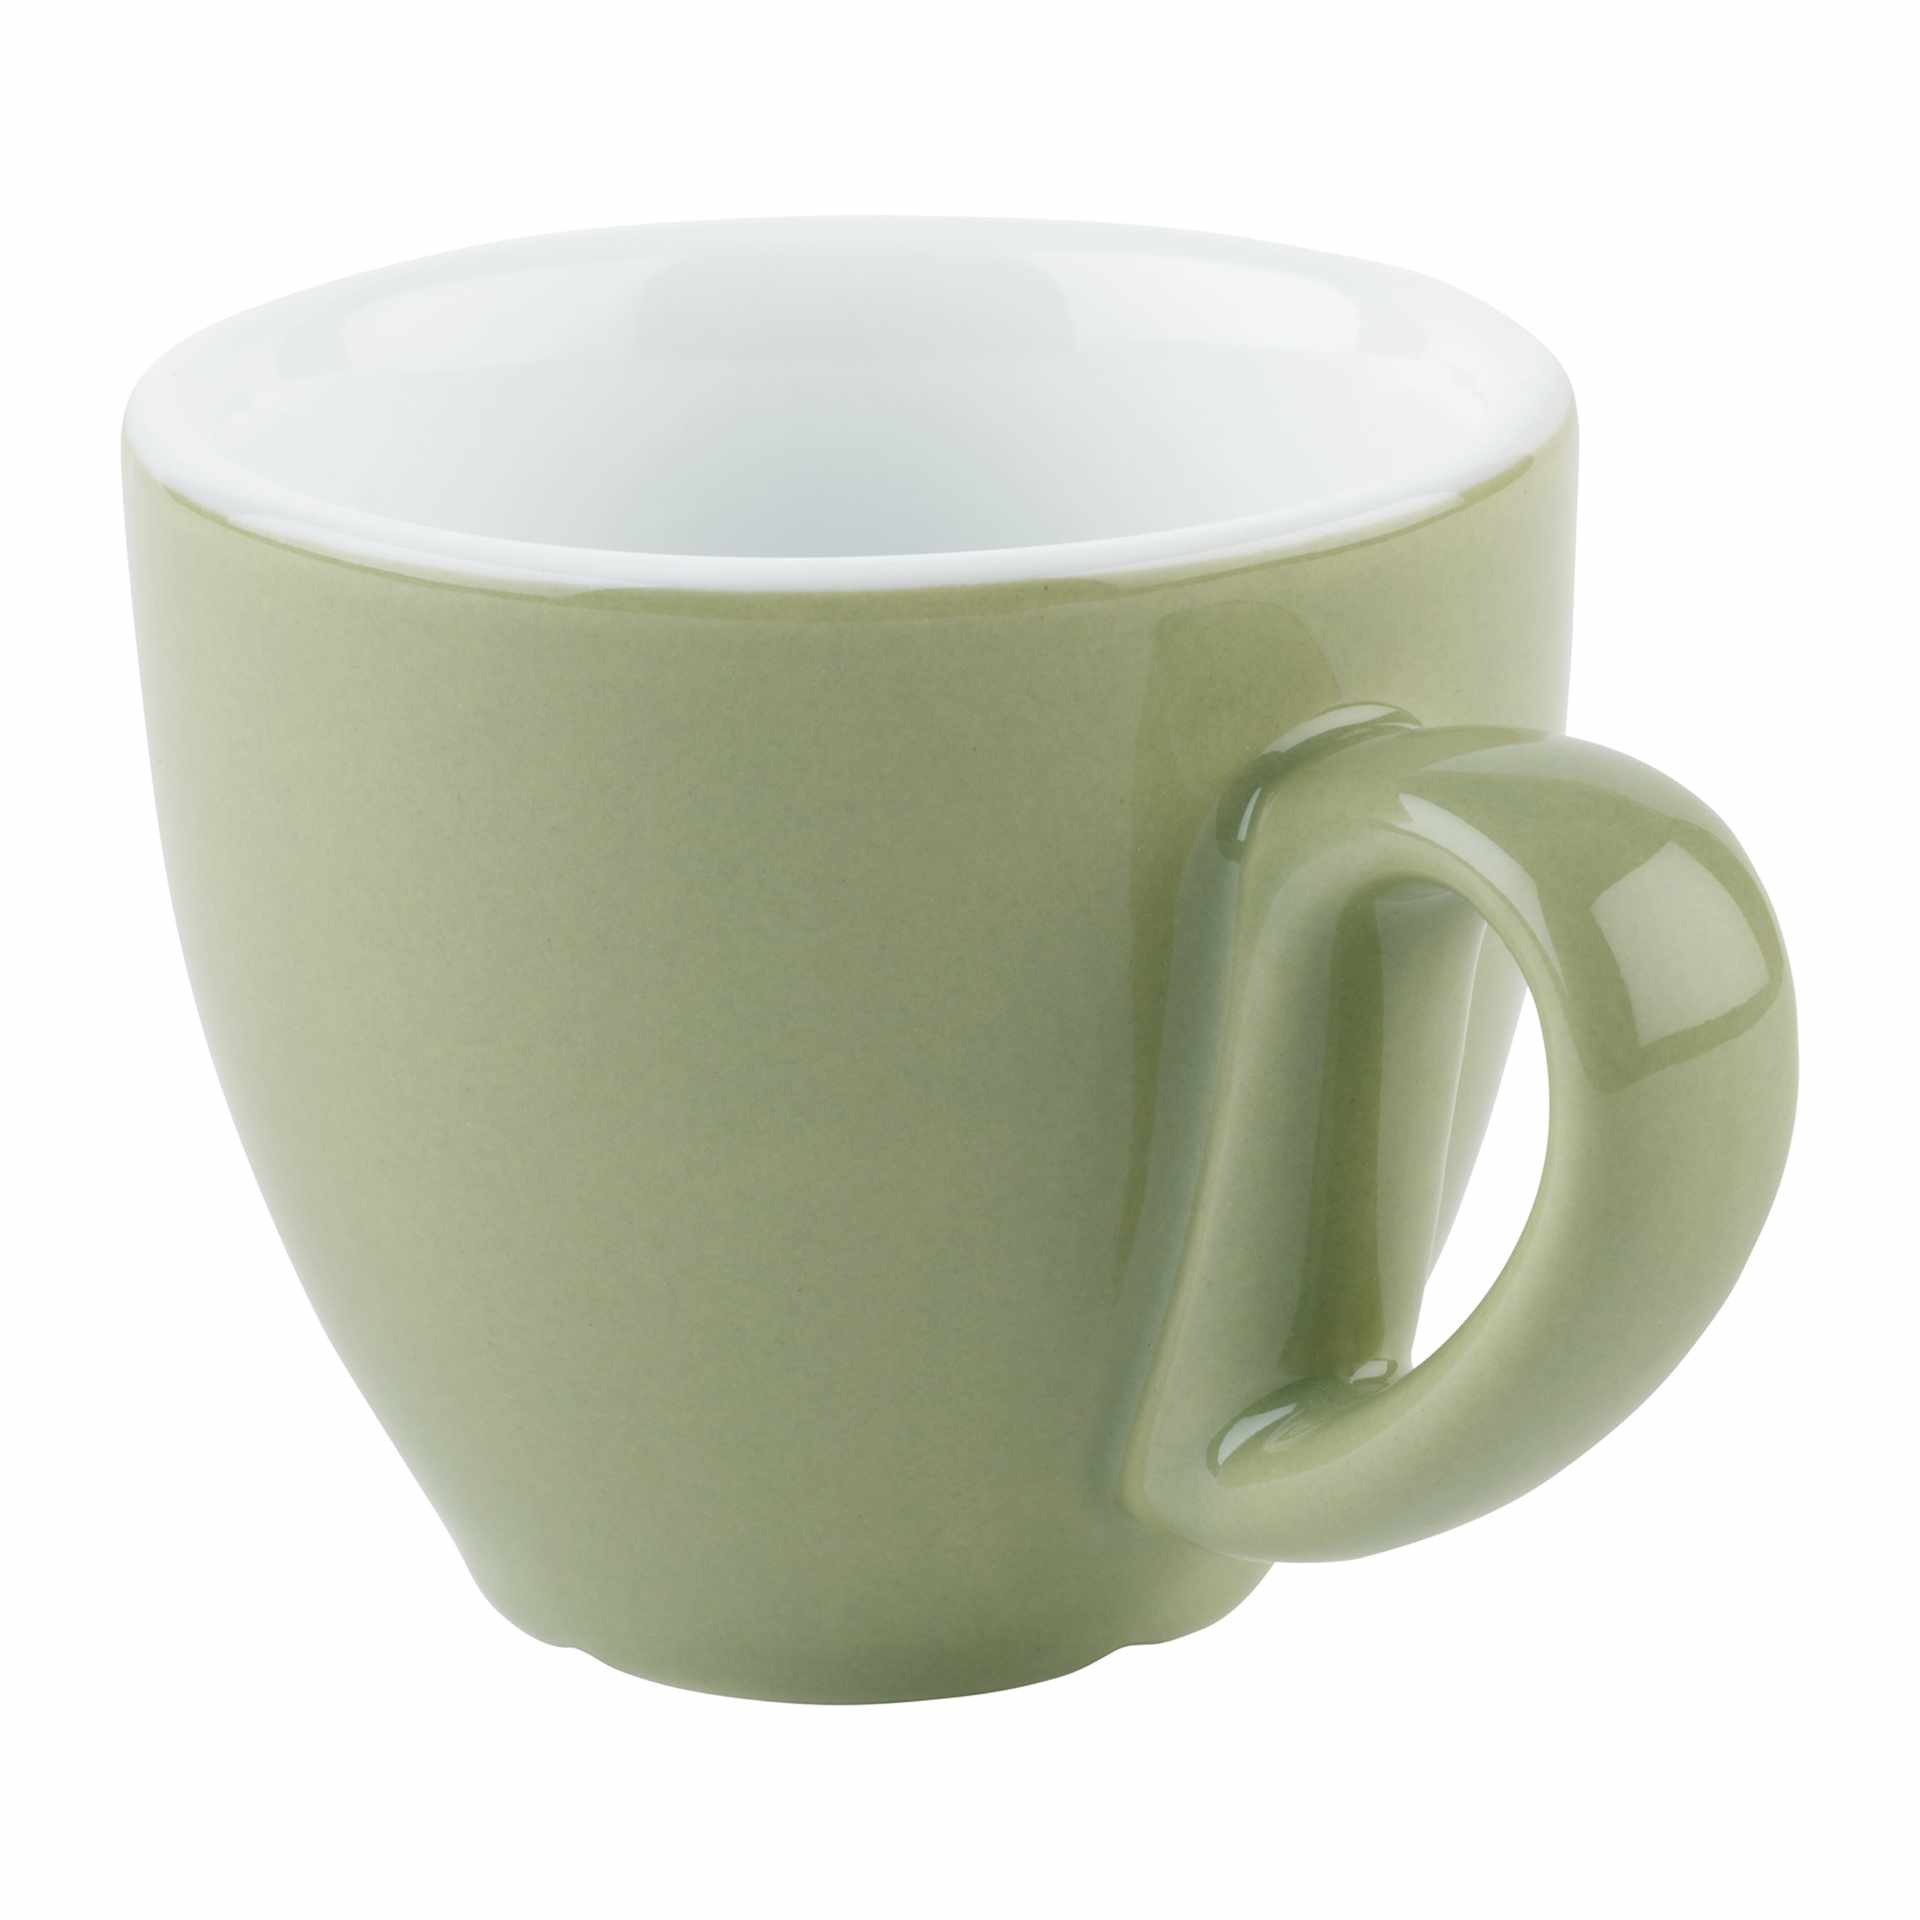 Espresso-Tasse - Serie Snug - grün - Höhe 5,5 cm - Ø 6 cm - Inhalt 0,80 l - Porzellan - 16001-B